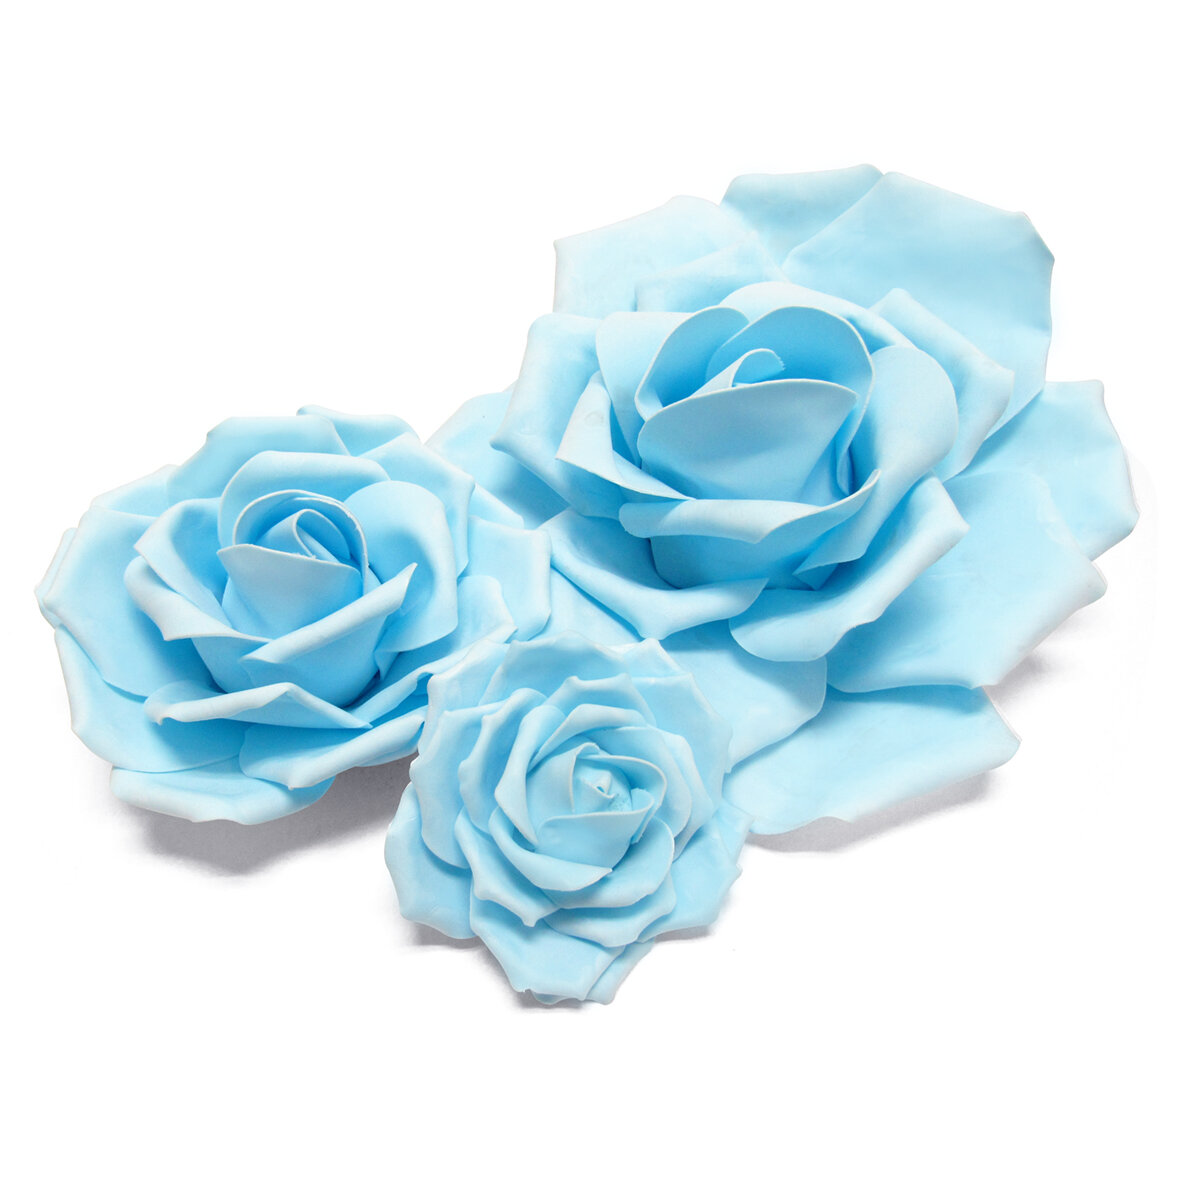 Red Barrel Studio® 3 Piece Rose Foam Flower Wall Décor Set | Wayfair